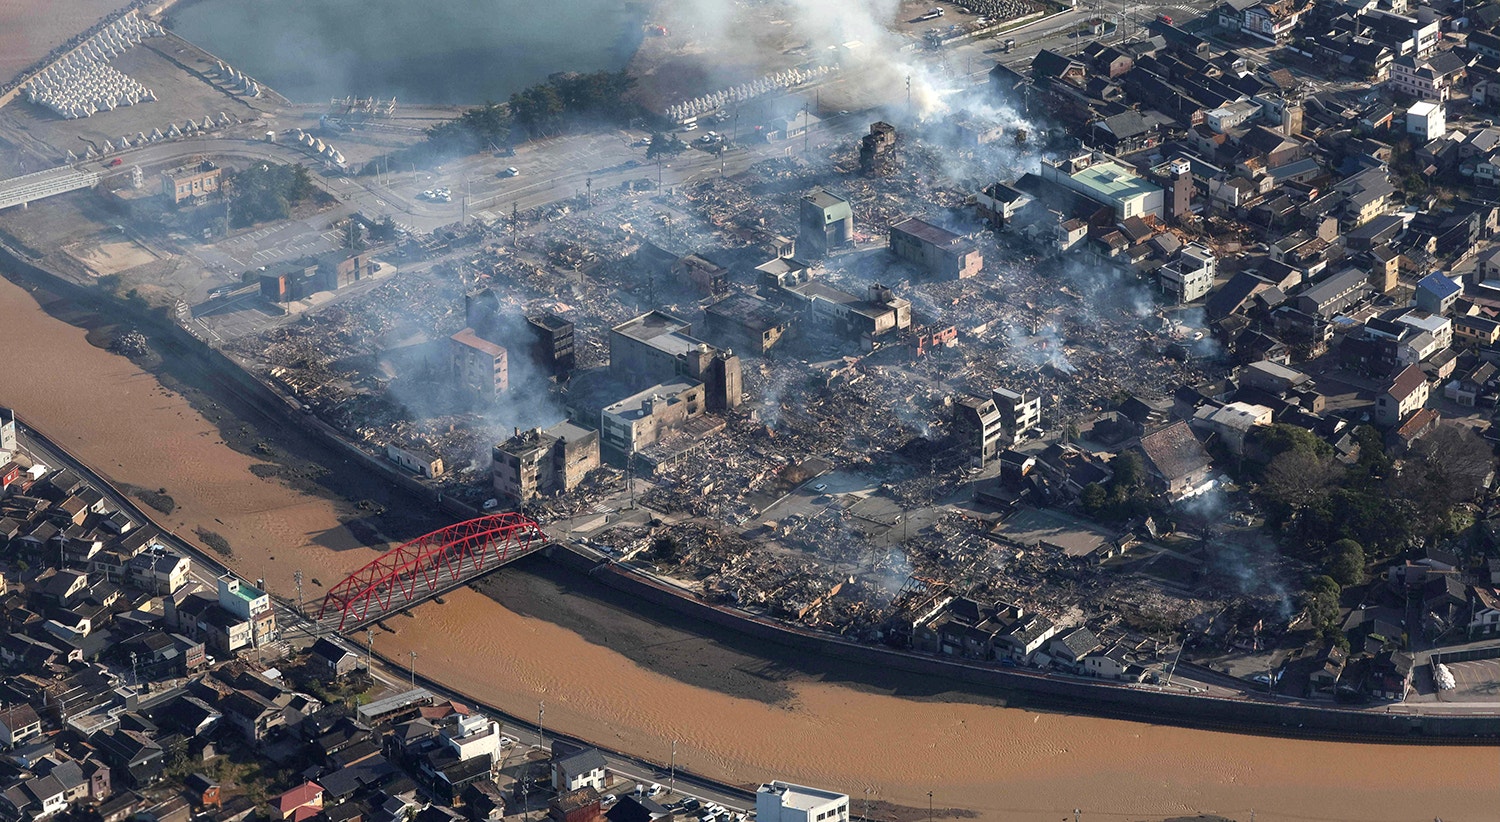  Uma vis&atilde;o a&eacute;rea revela os estragos na cidade de Wajima, a 2 de janeiro. | Foto: Jiji Press via EPA 